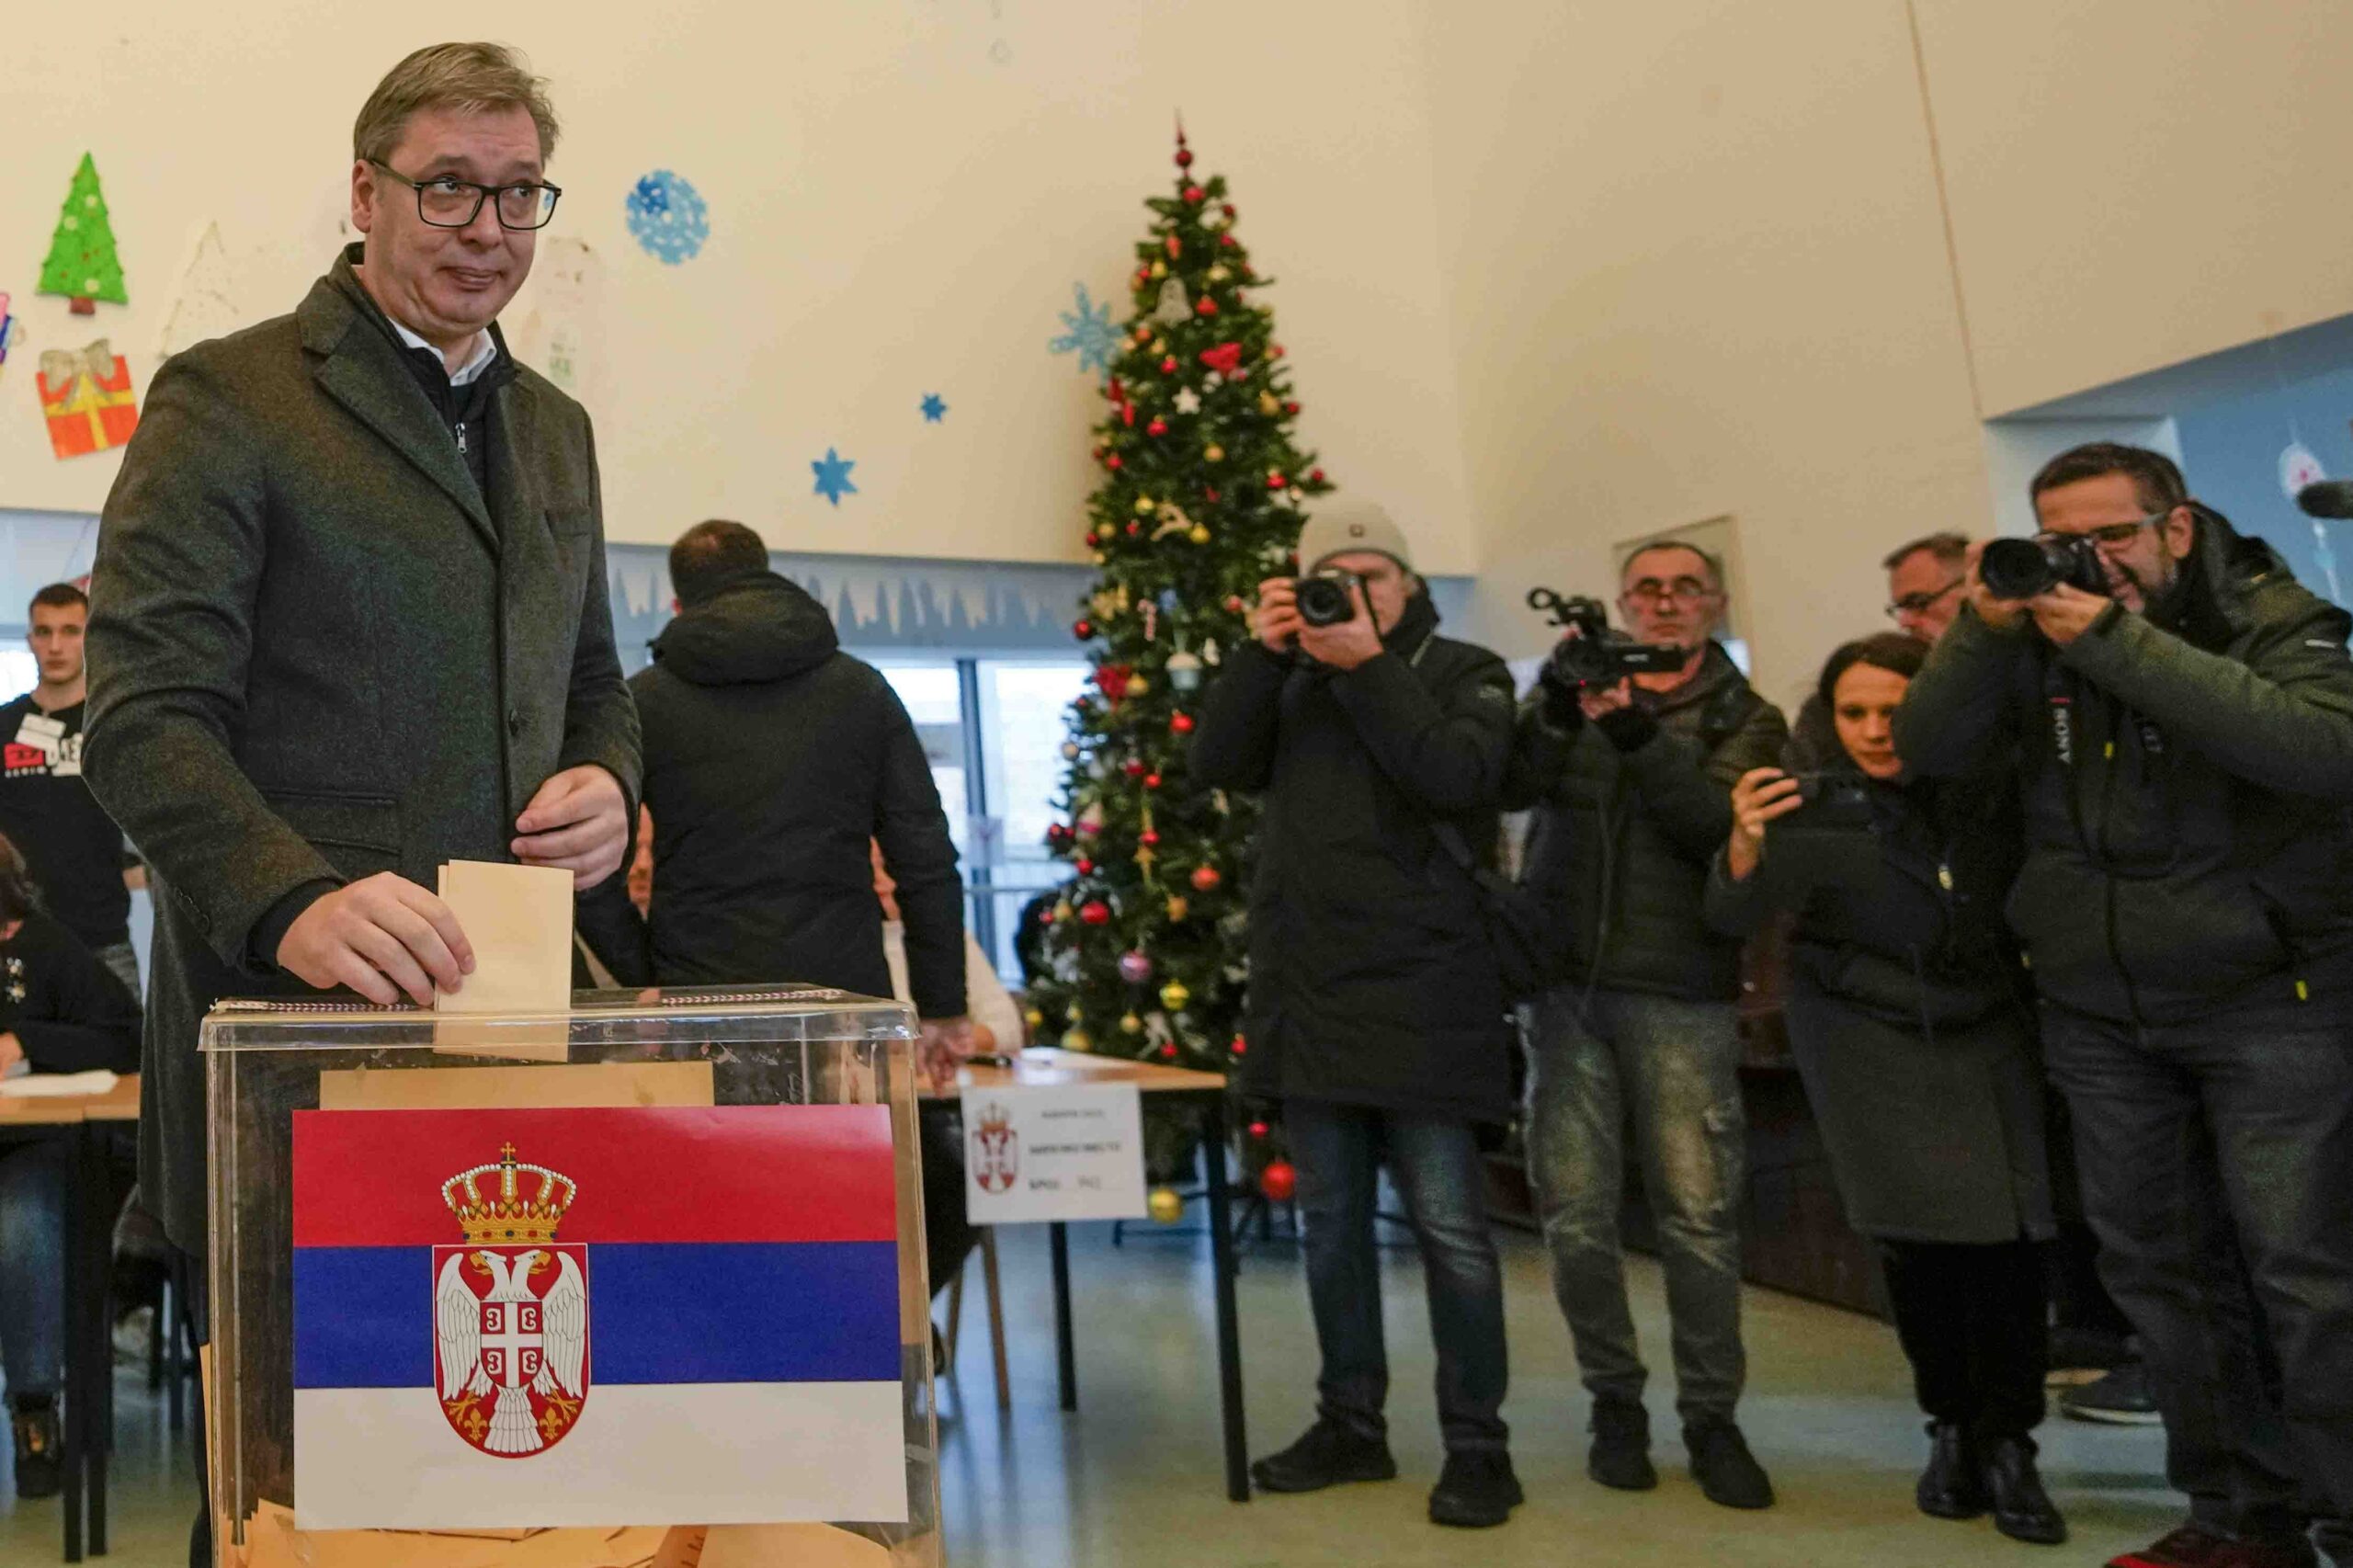 Σερβία – Βουλευτικές εκλογές: Νίκη στις βουλευτικές εκλογές και αυτοδυναμία ανακοίνωσε το Σερβικό Προοδευτικό Κόμμα του Βούτσιτς